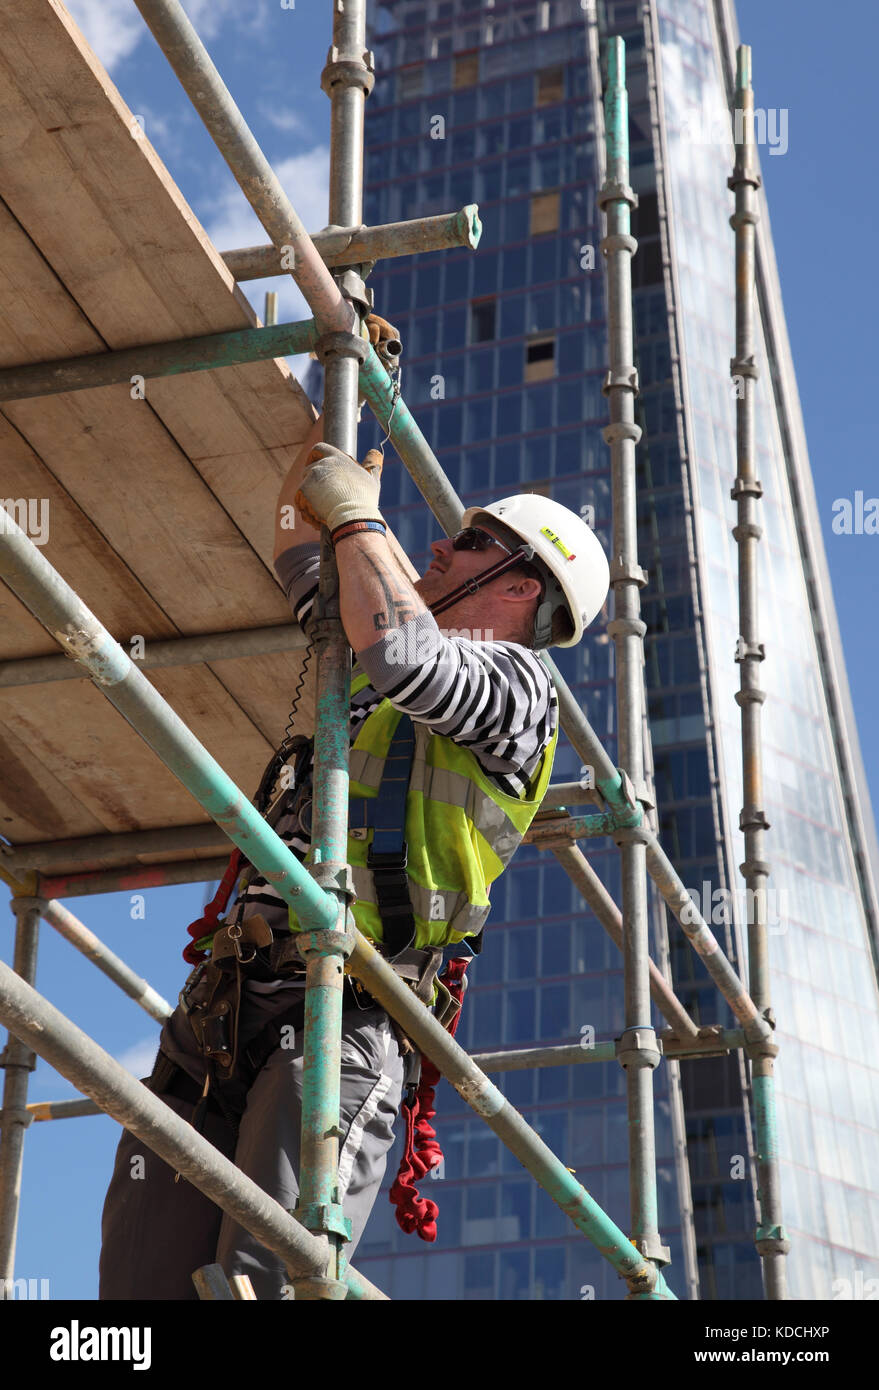 Un scaffolder érige une plate-forme de travail temporaire sur une tour au-dessus de Londres. Affiche du harnais de sécurité en usage. Le fragment est dans l'arrière-plan. Banque D'Images